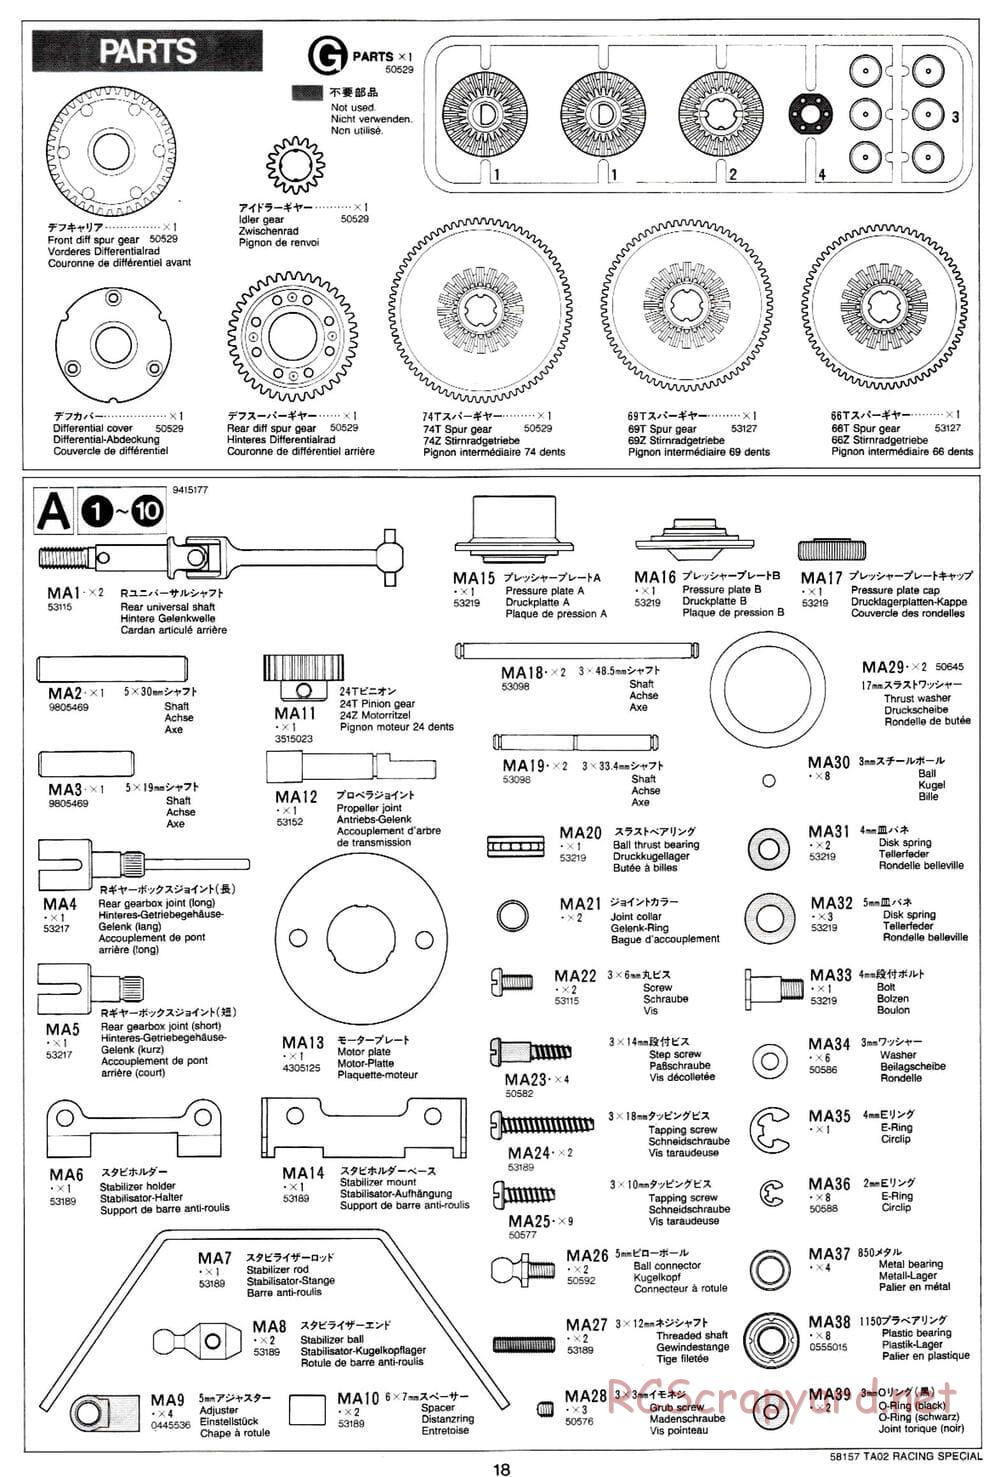 Tamiya - TA-02RS Chassis - Manual - Page 18